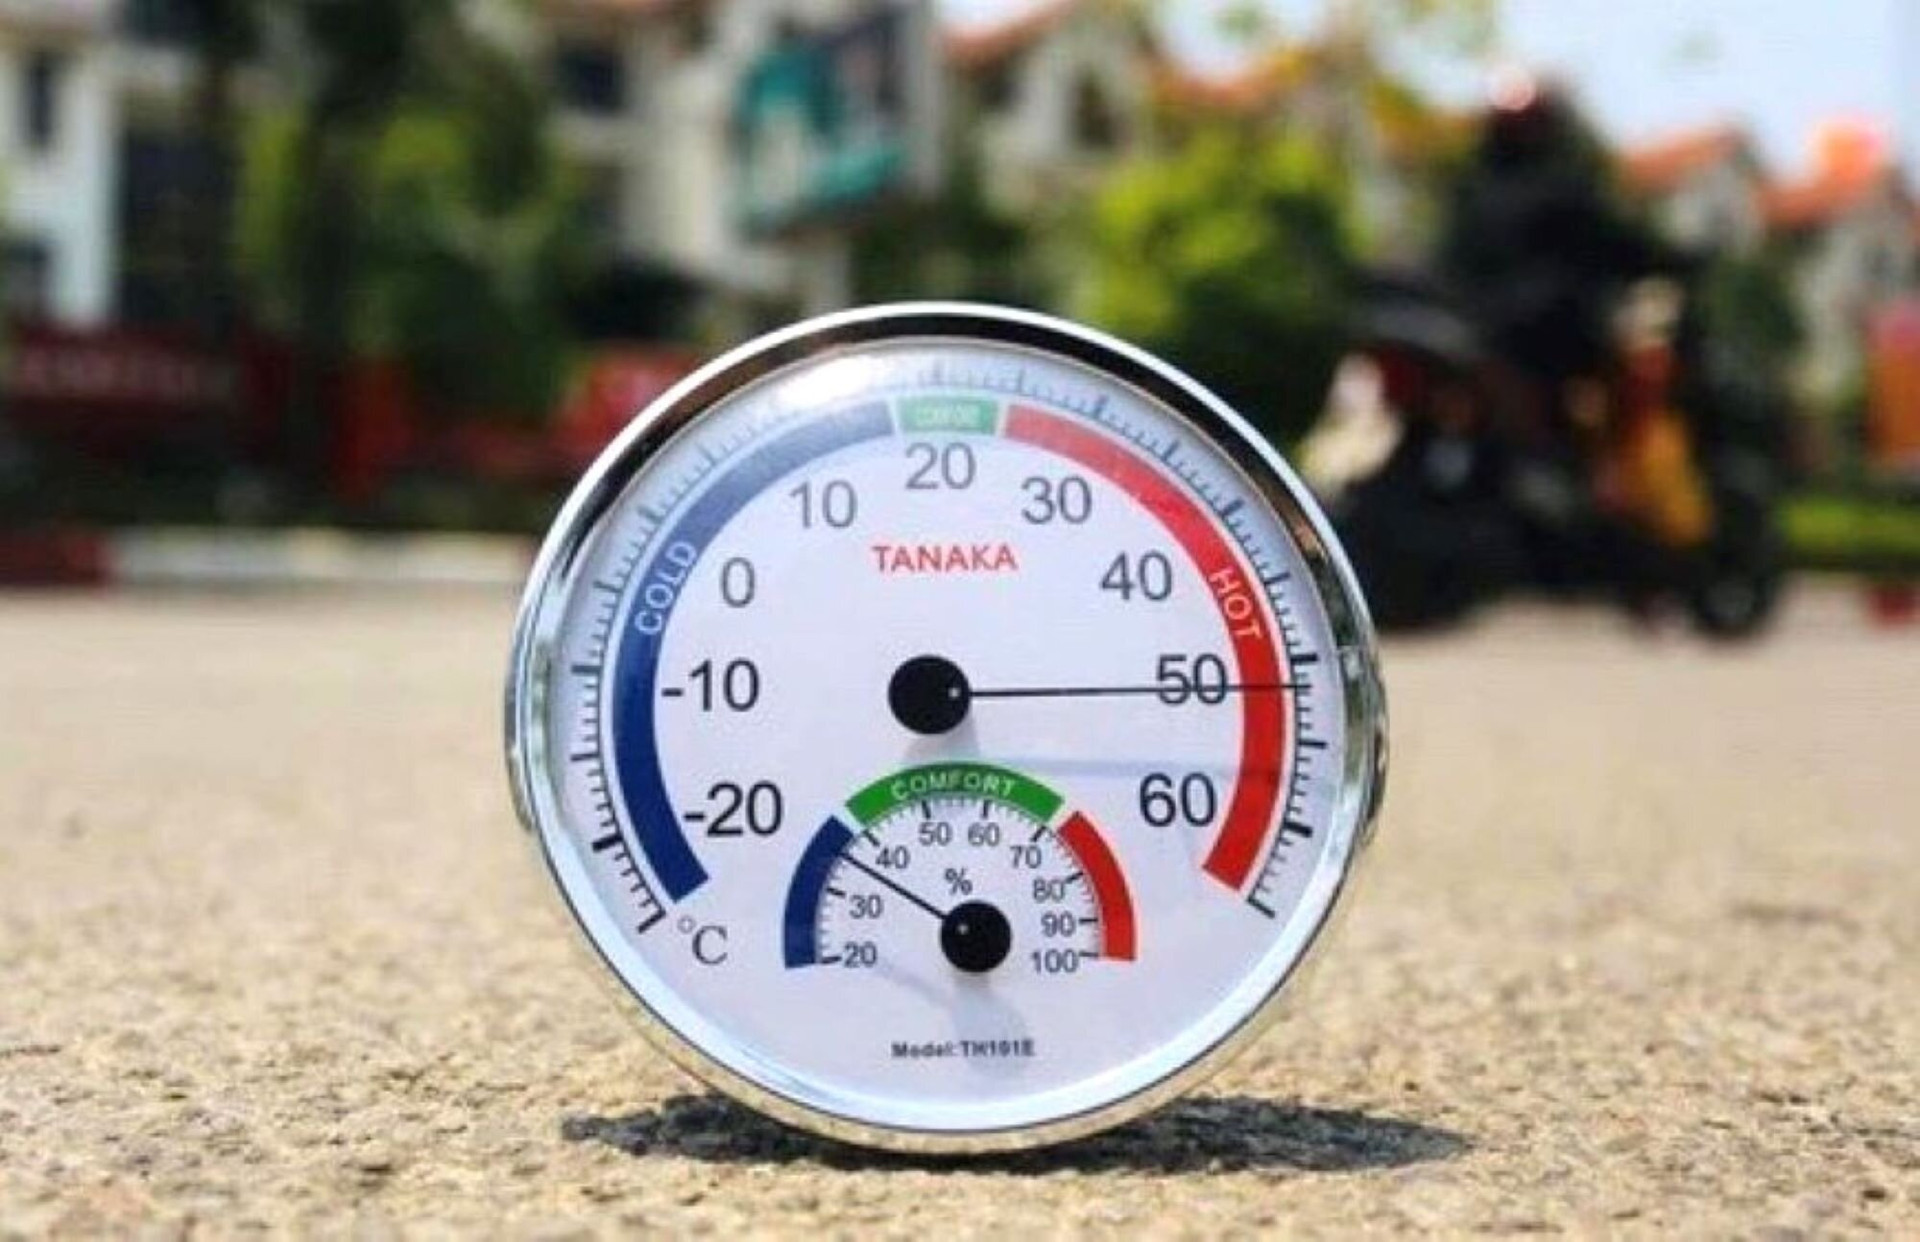 Nền nhiệt độ đo ngoài đường giữa trưa ở TP Hà Tĩnh ngày 28/4 là hơn 50 độ C. (Ảnh: CTV)